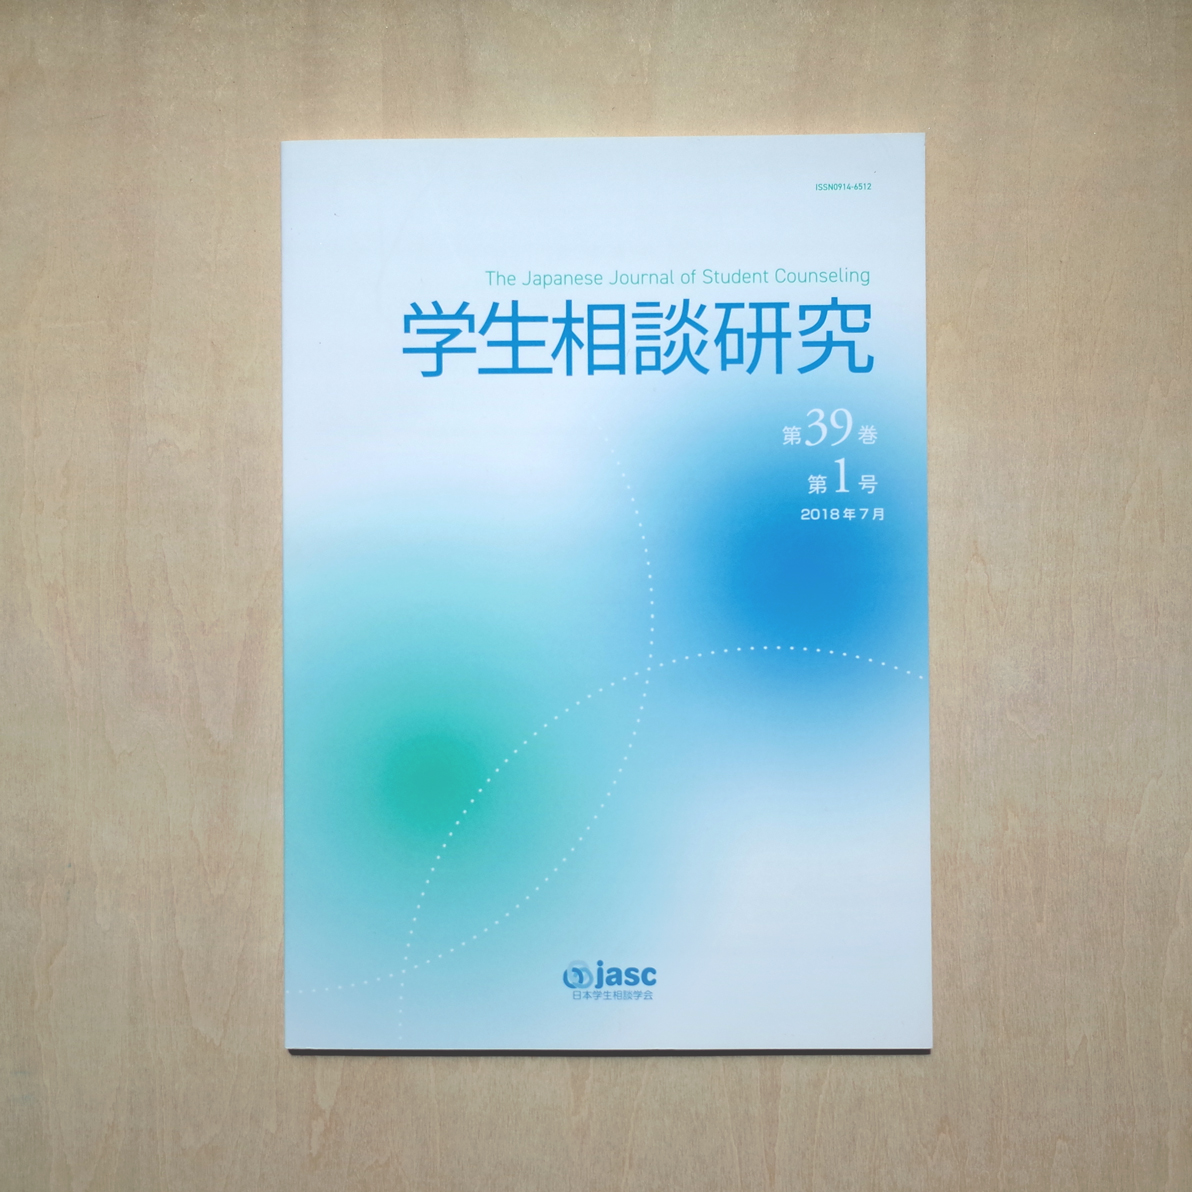 日本学生相談学会機関紙『学生相談研究』表紙デザイン-2019